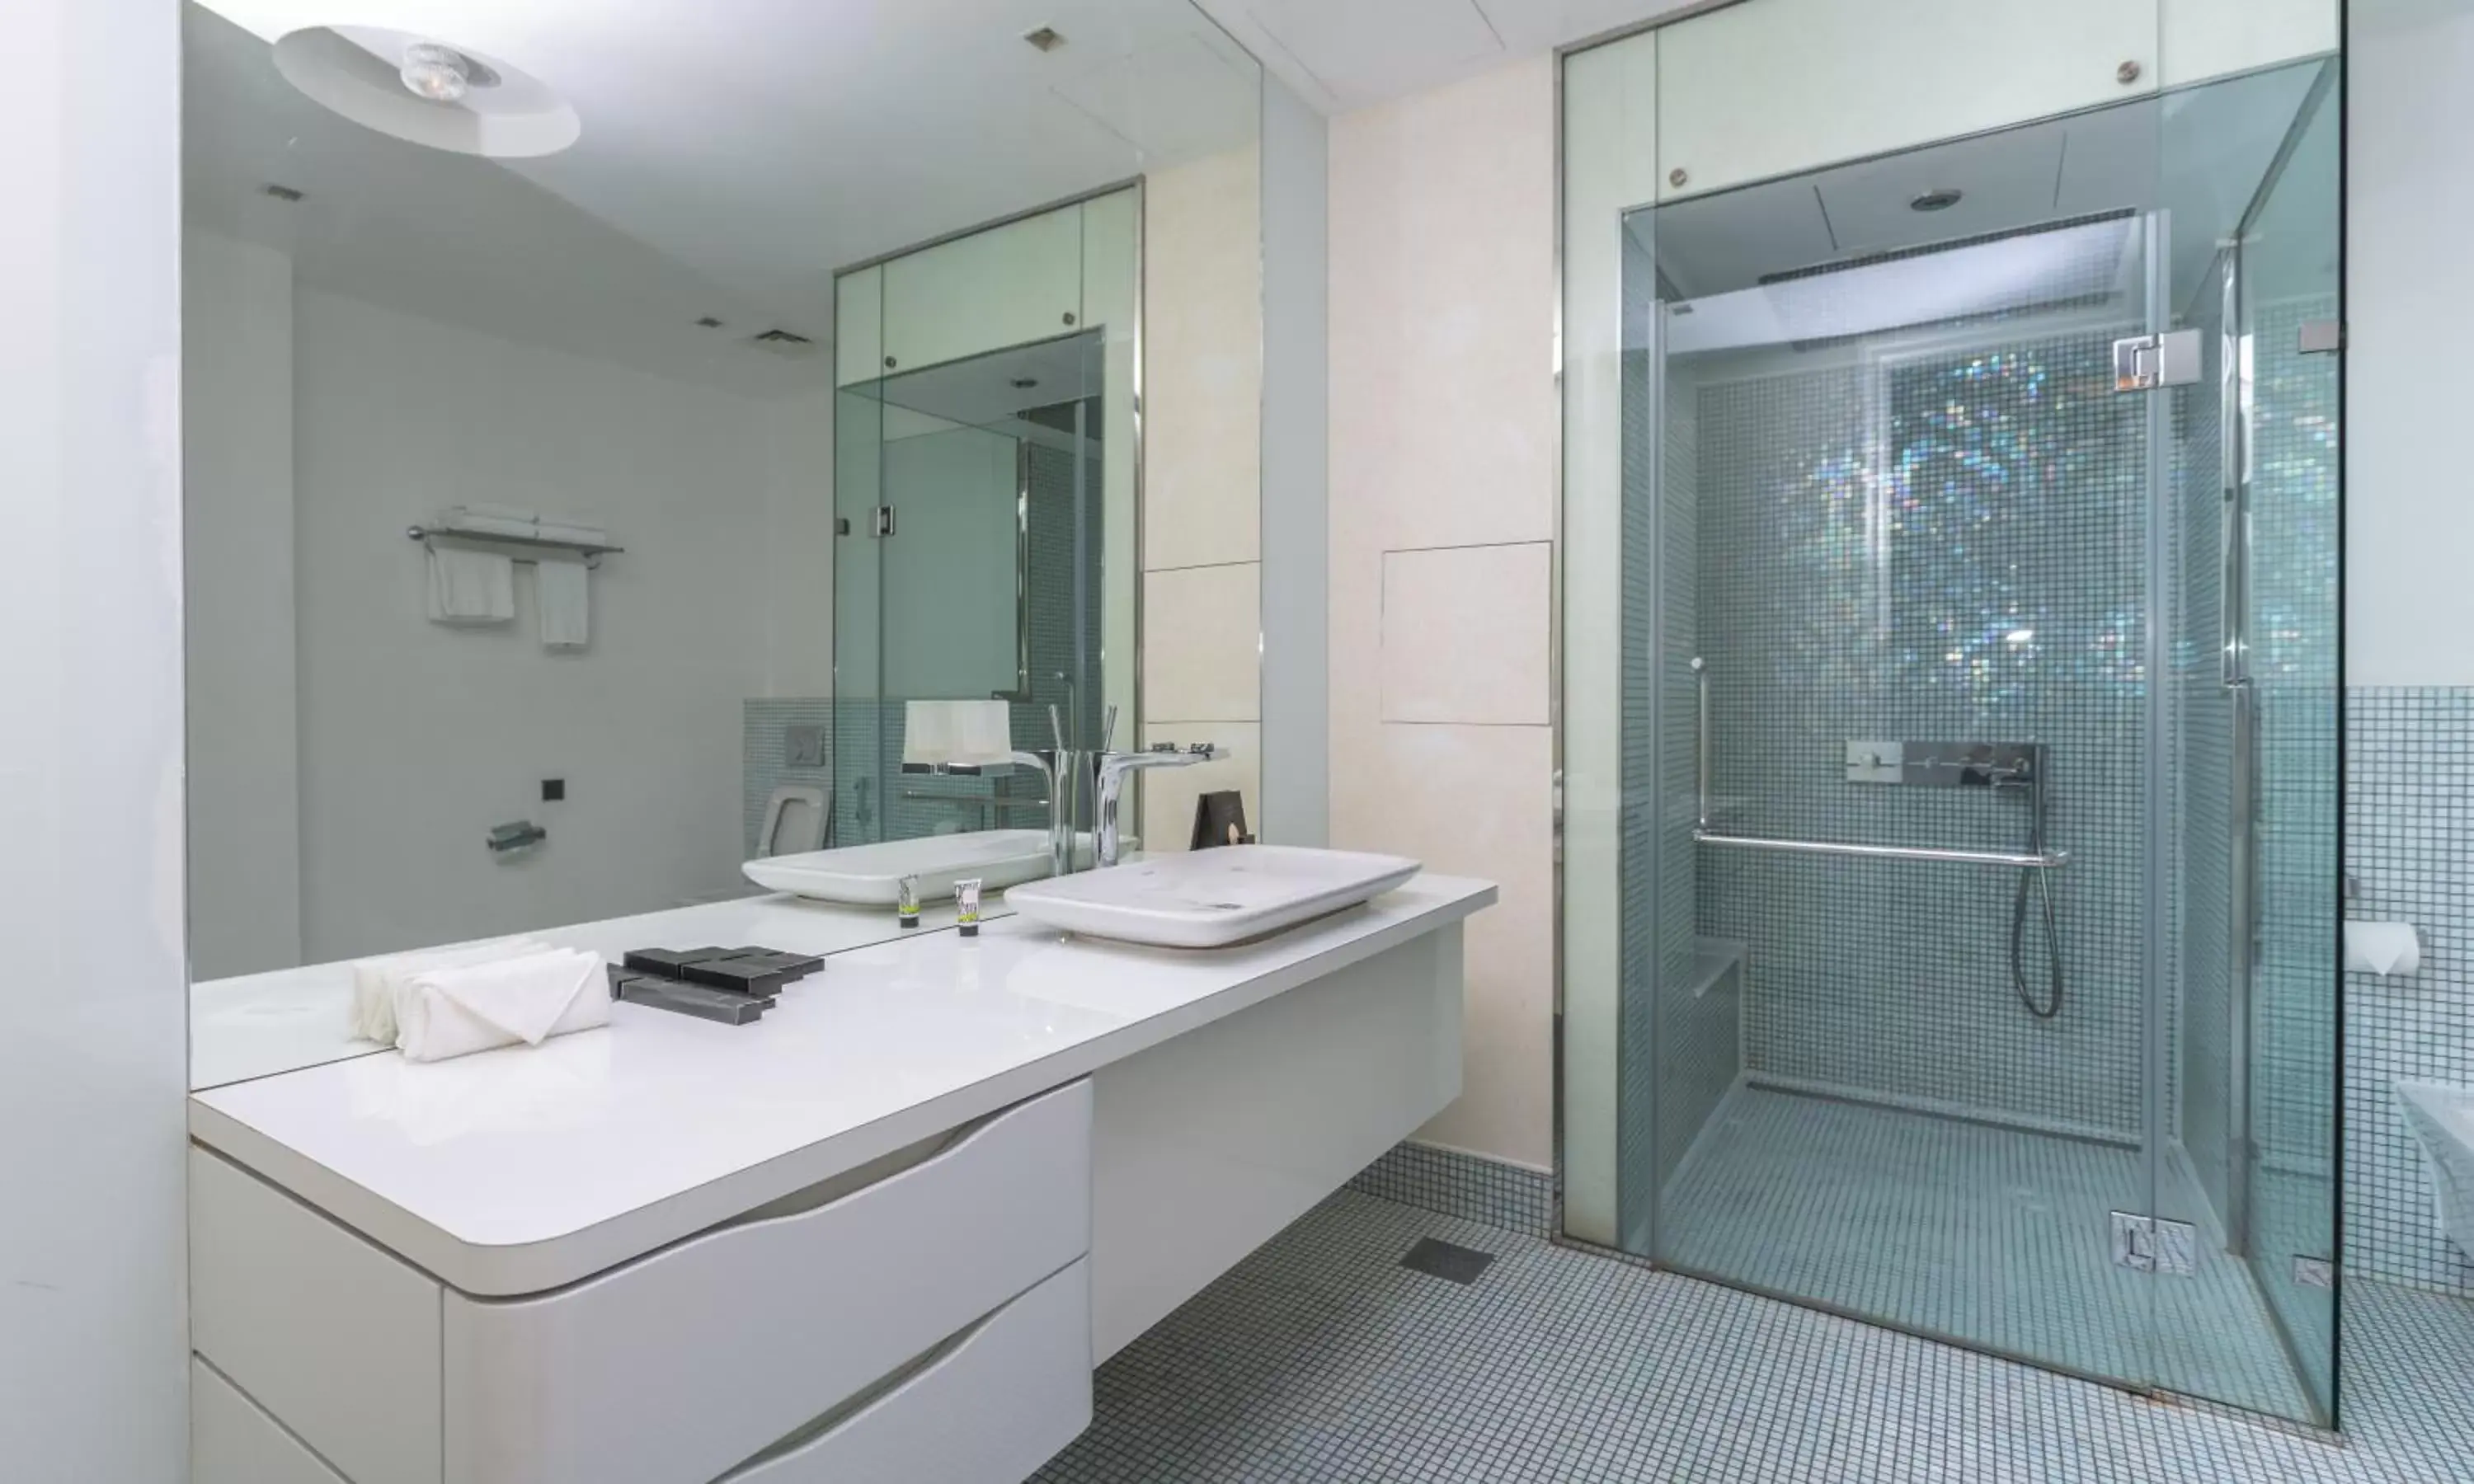 Bathroom in Ezdan Hotels Doha